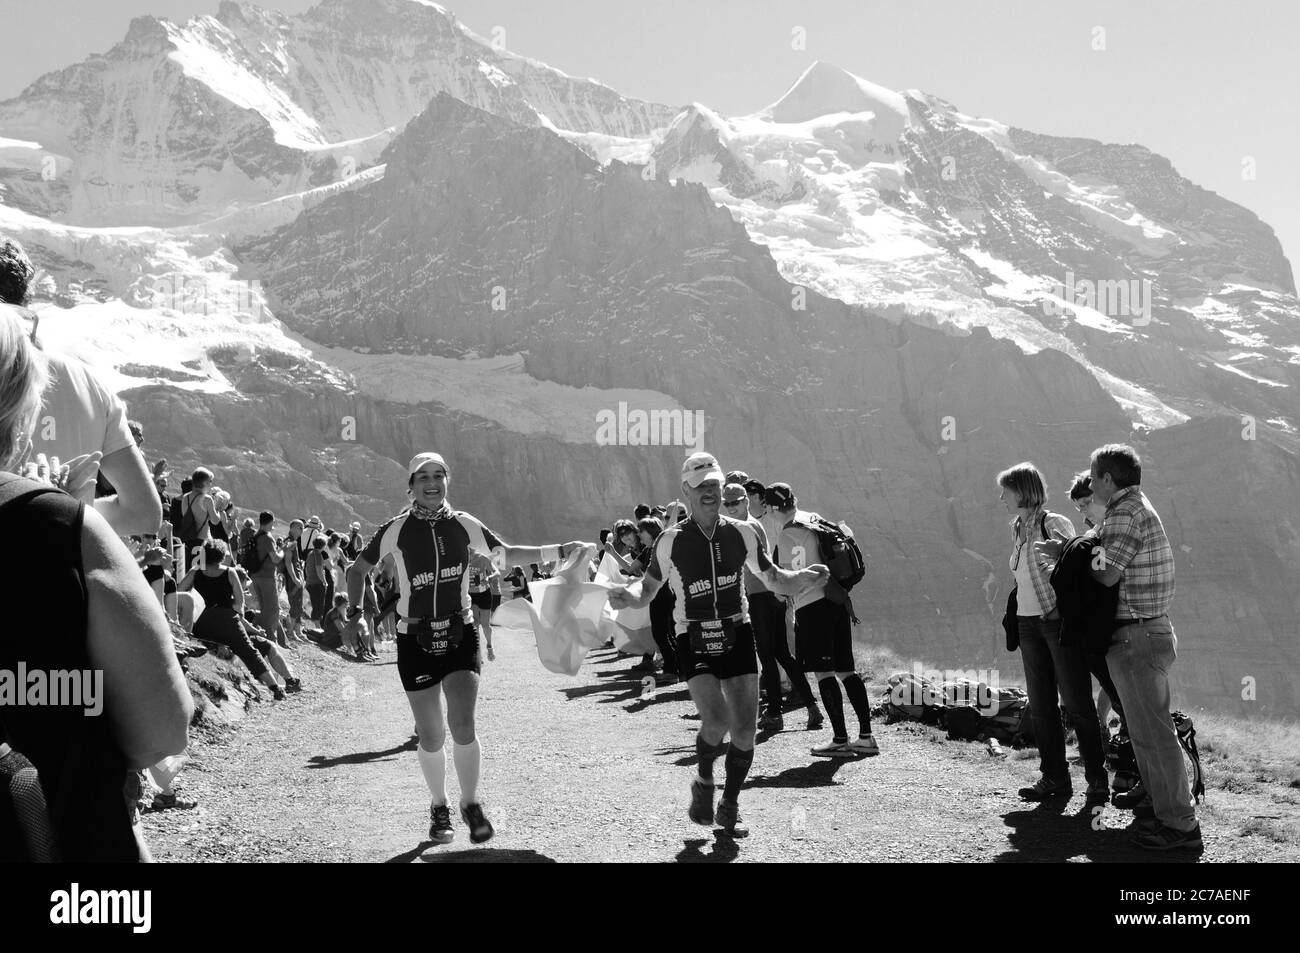 Tausender von Zuschauern und Marathonläufern auf der Kleinen Scheidegg bei der Jungfraujoch-Bahn Tausende von Menschen beim Jungfrau-Marathon Sport e Stockfoto